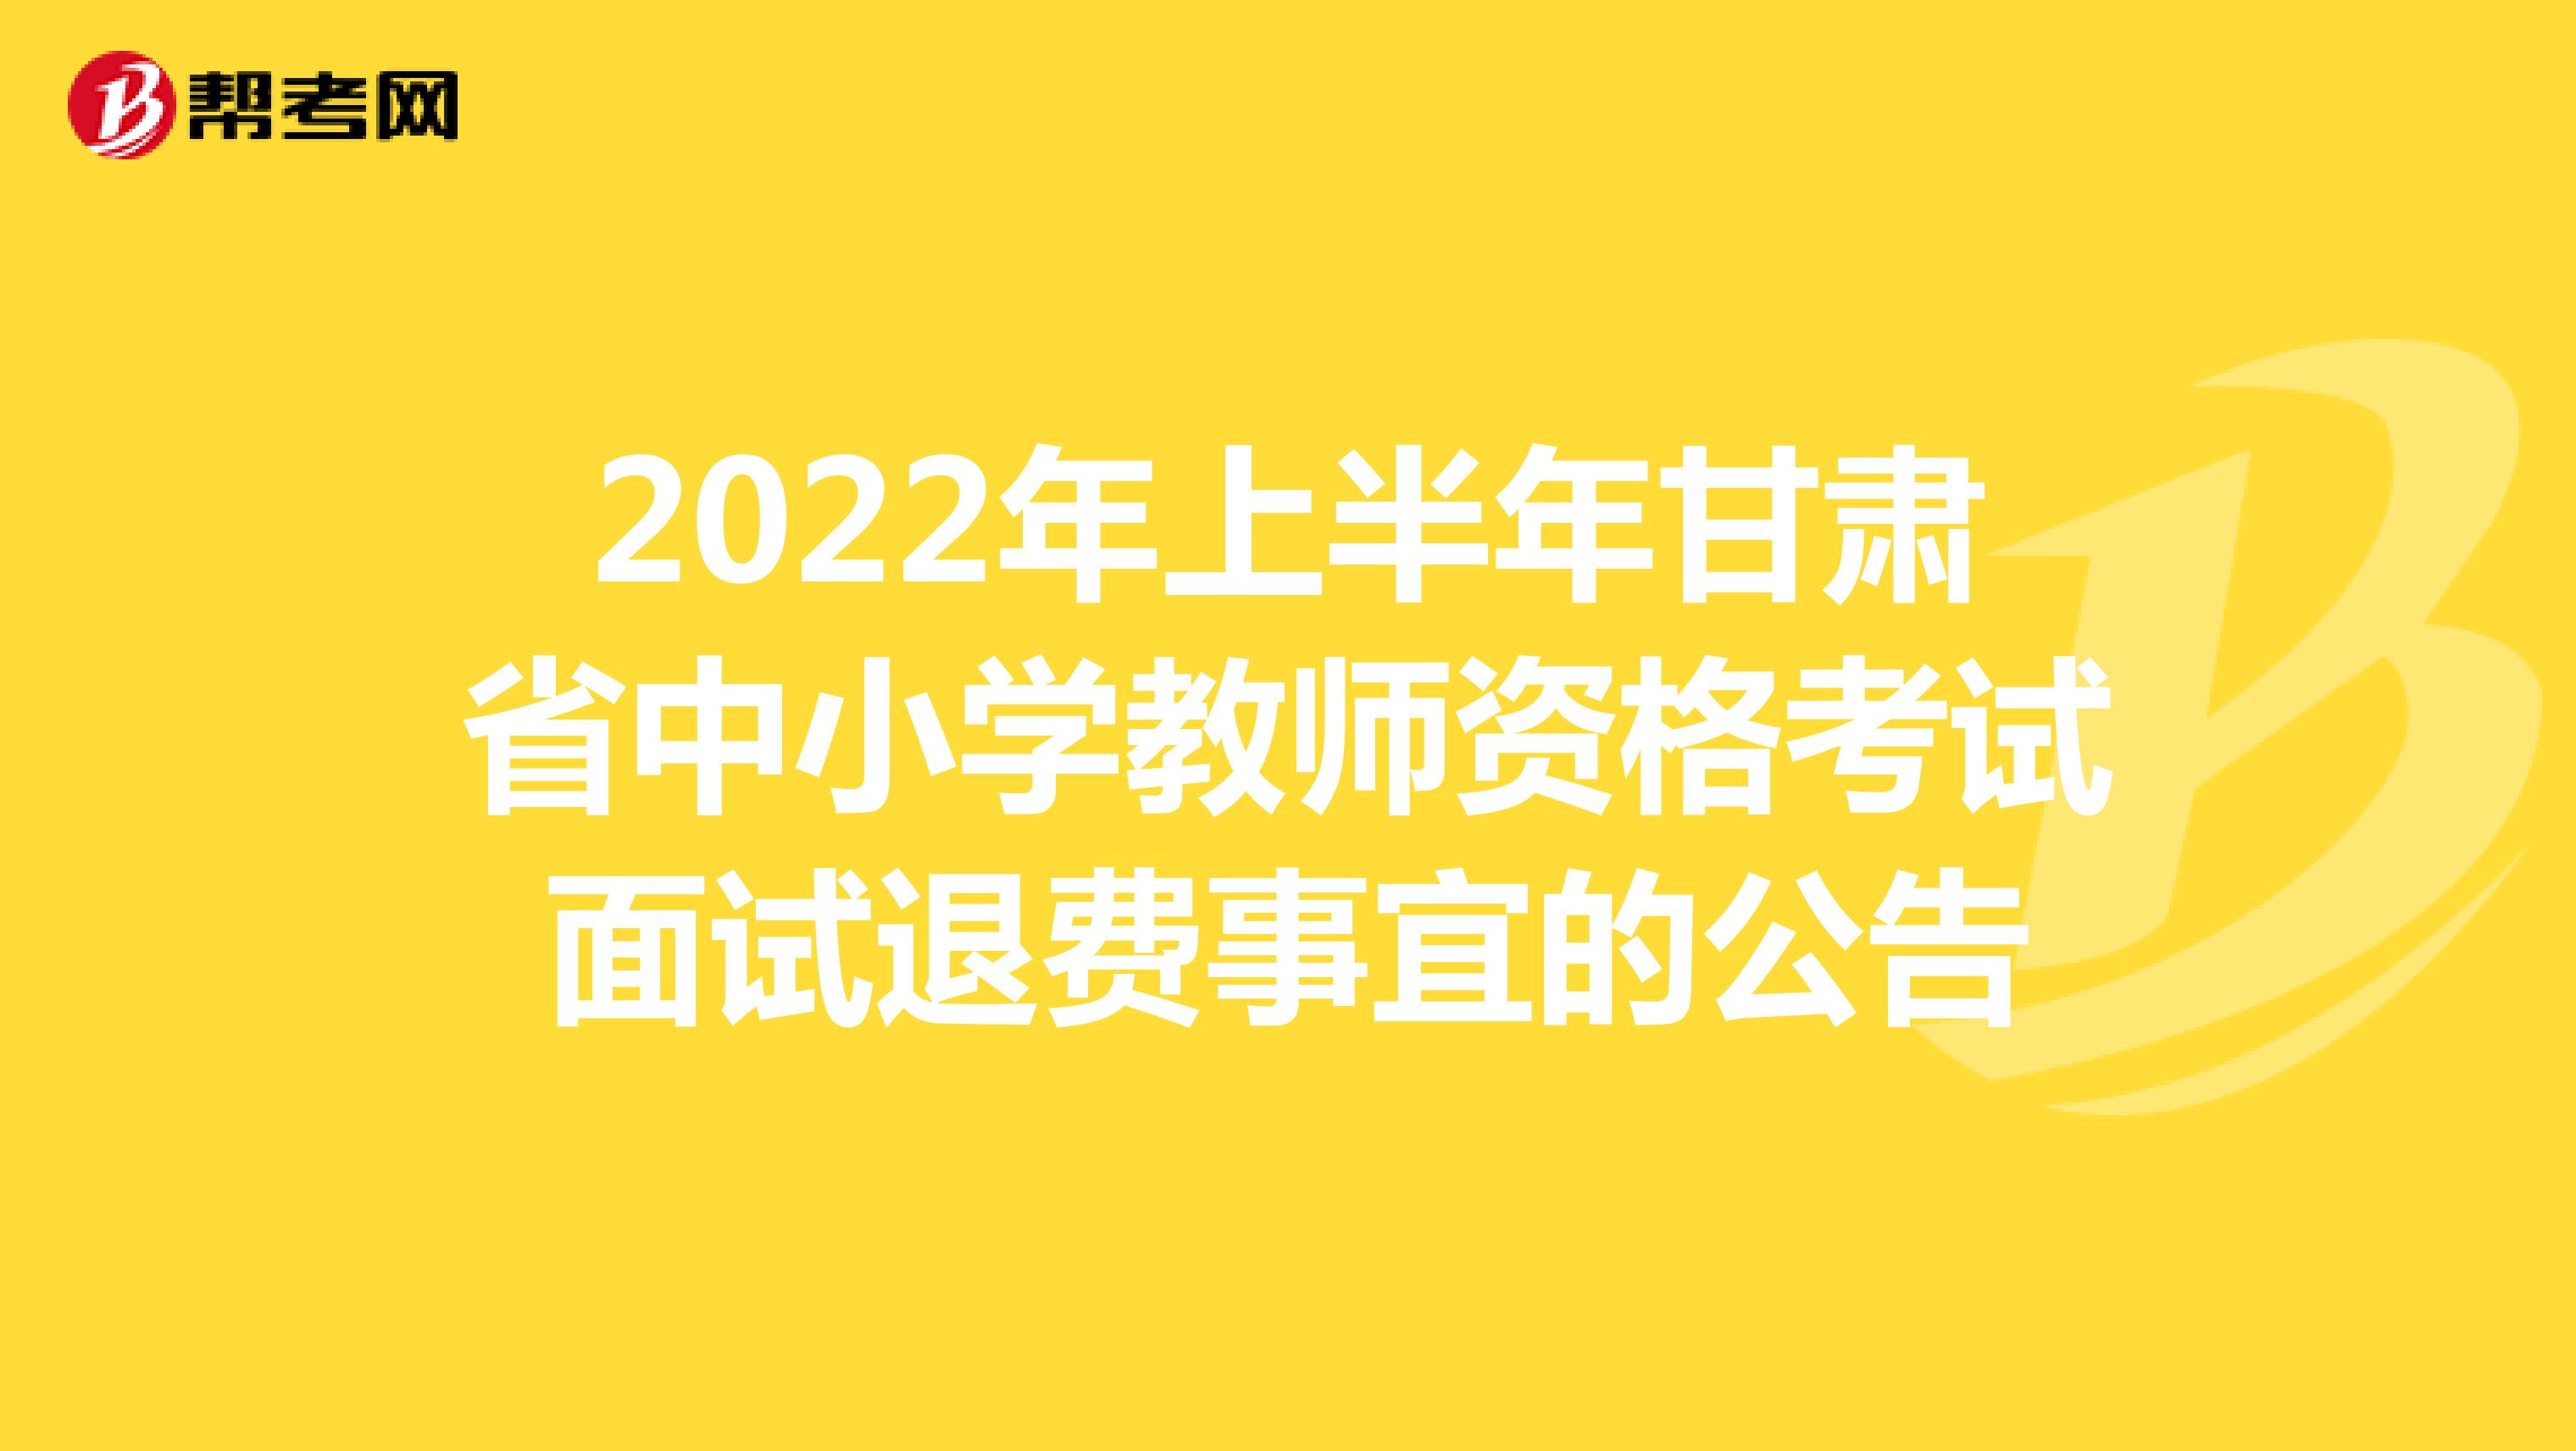 2022年上半年甘肃省中小学教师资格考试面试退费事宜的公告